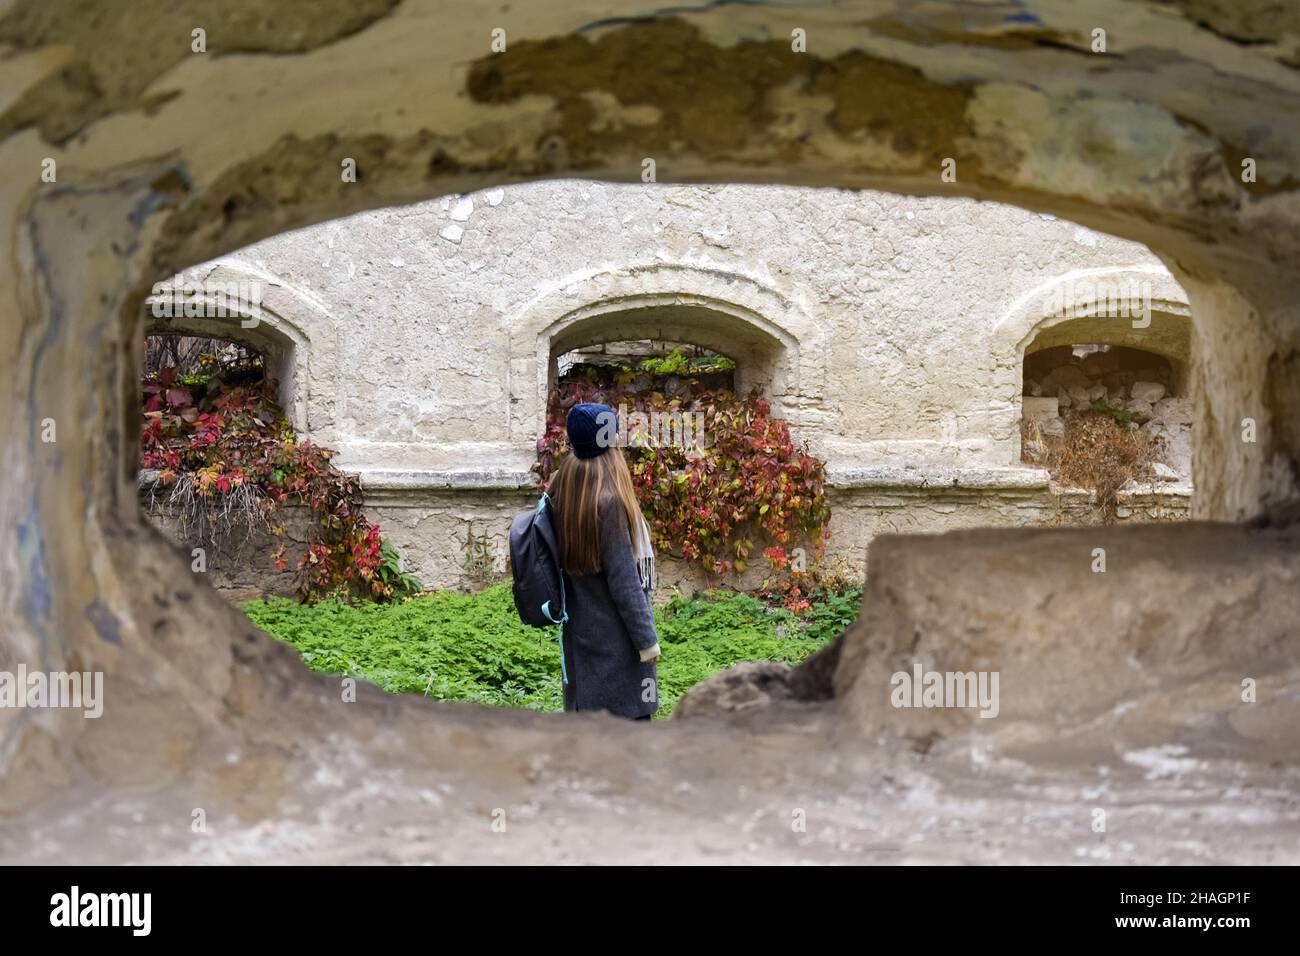 Vacaciones, viajes, turismo en otoño. Chica joven con largo cabello rubio y mochila examina las ruinas de un edificio antiguo. Foto de stock